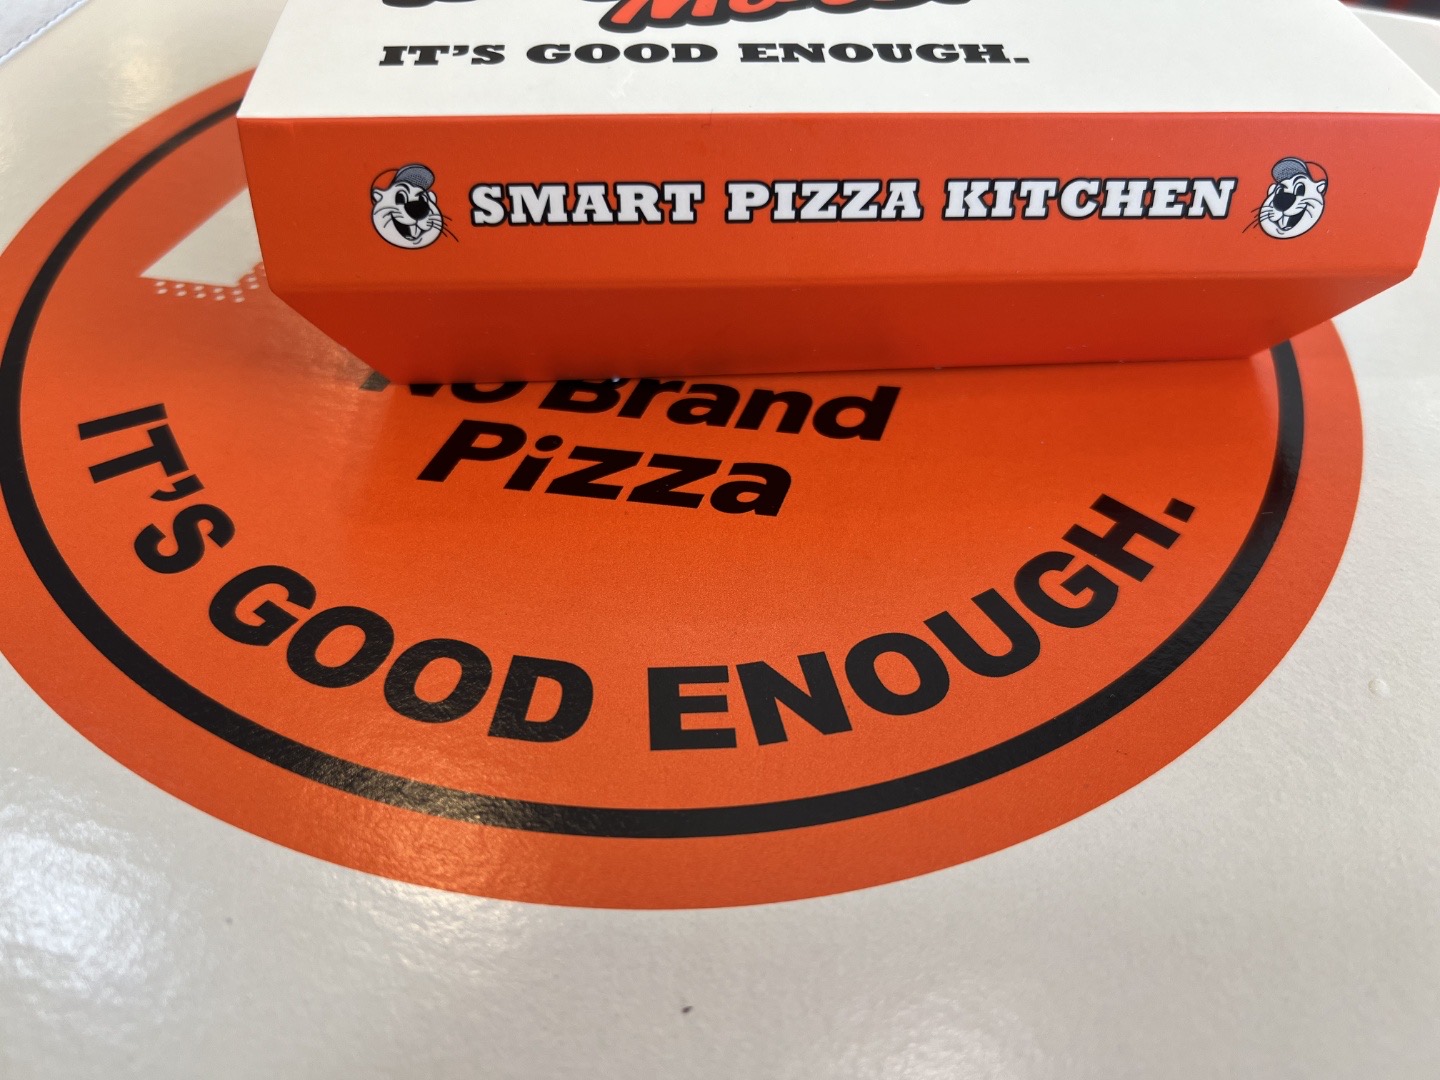 노브랜드 피자 포장에 적힌 ‘스마트 피자 키친’ 문구